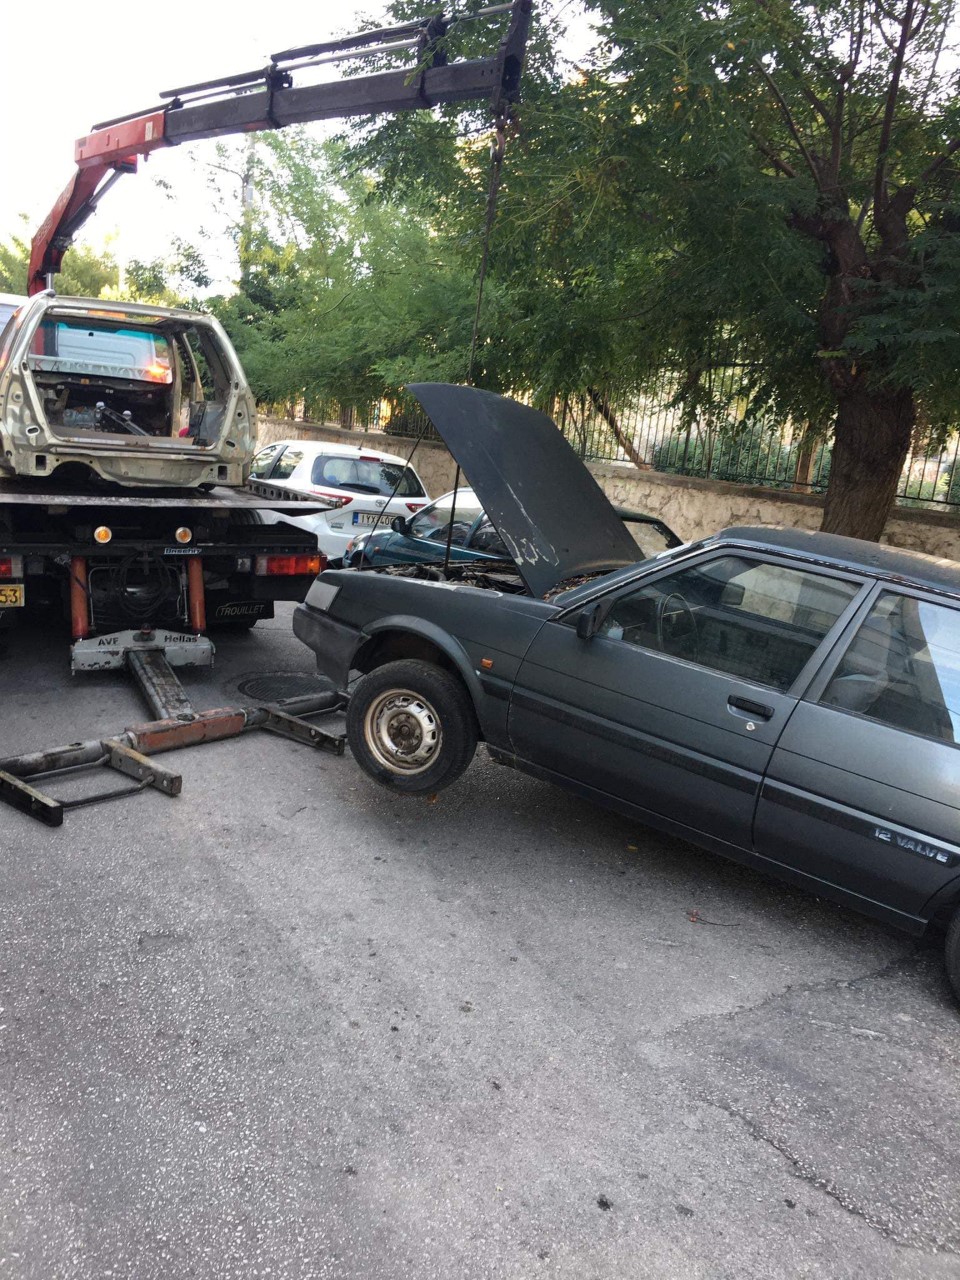 Δήμος Αιγάλεω: Απομάκρυνση εγκαταλελειμμένων αυτοκινήτων